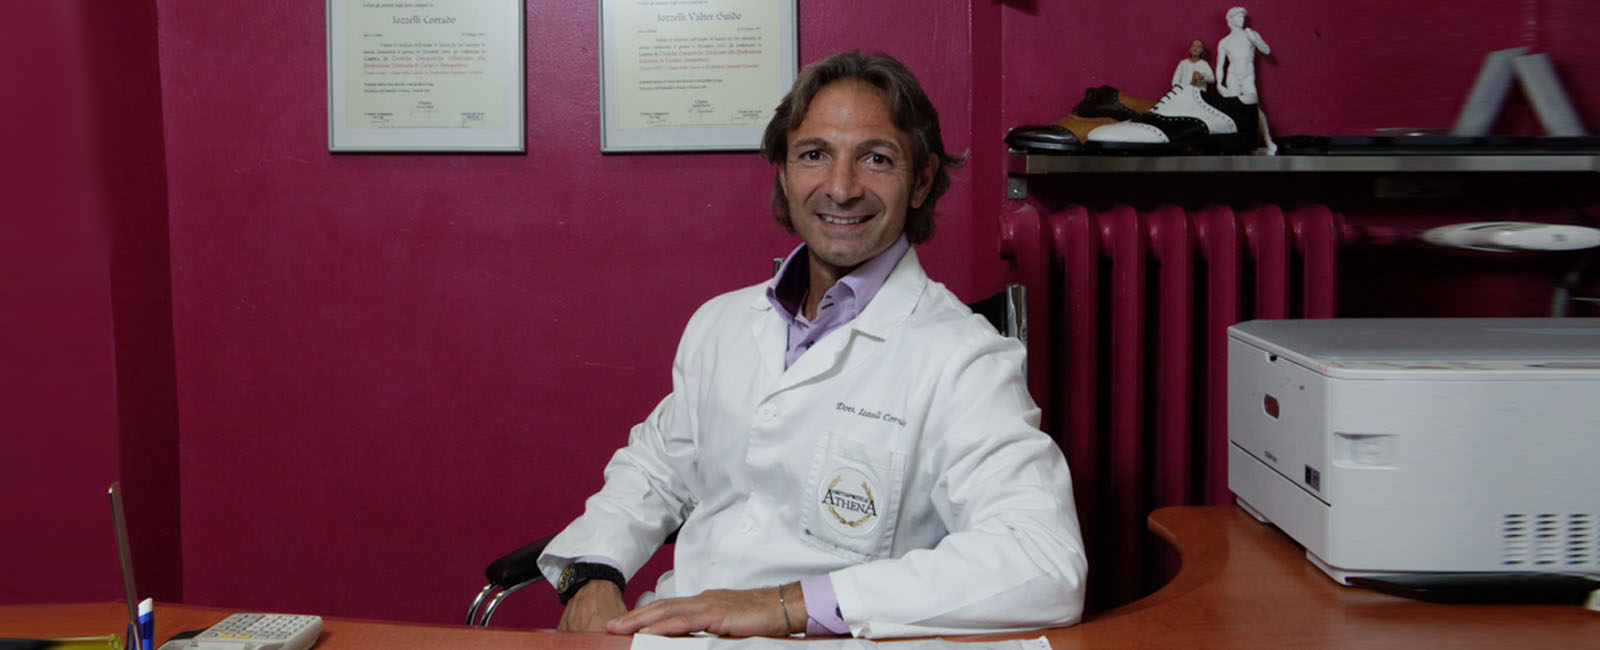 Dr. Corrado Iozzelli